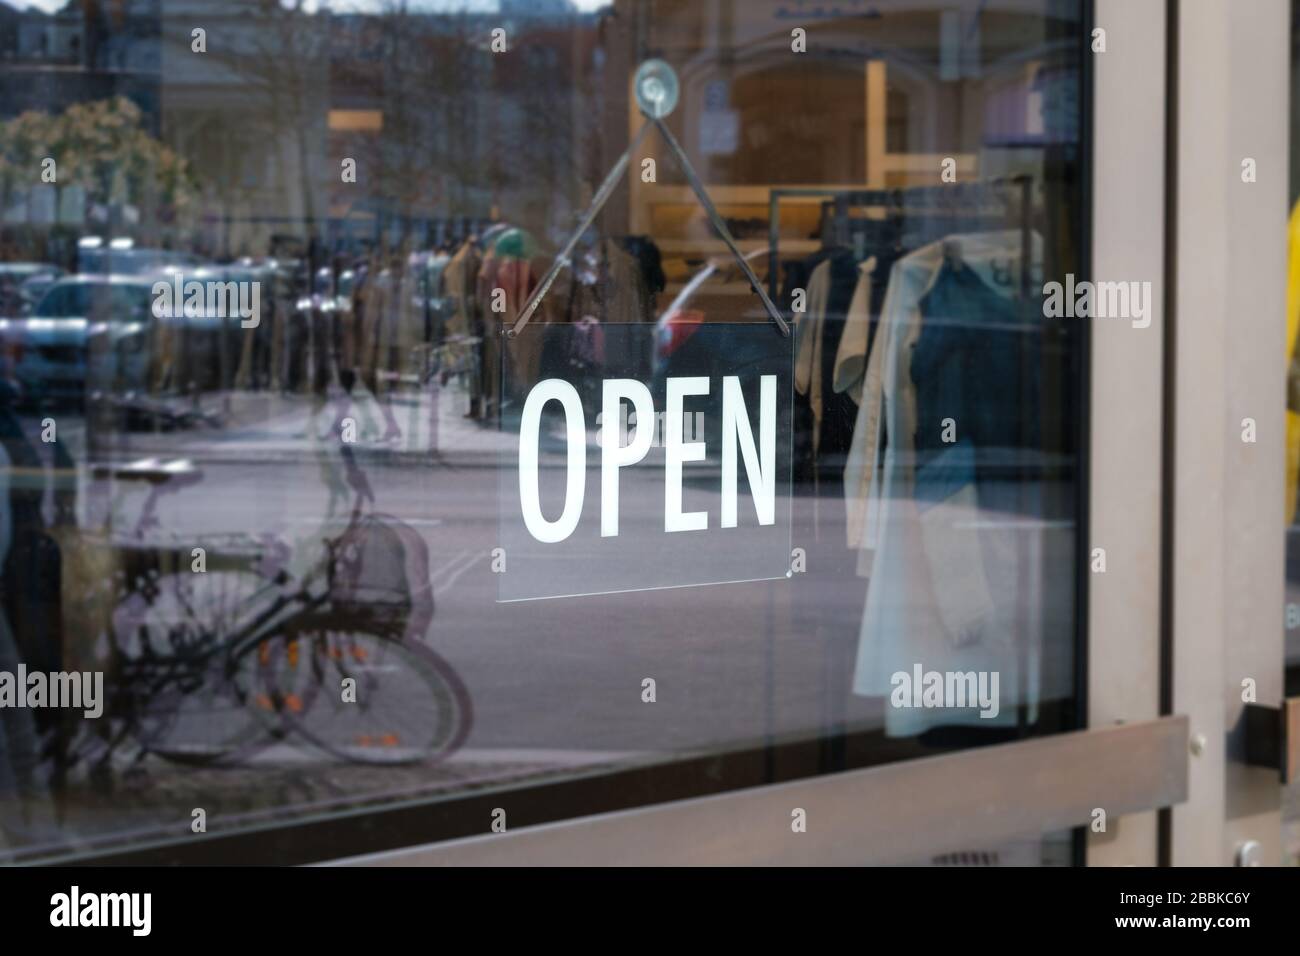 Wir sind ein offenes Schild an der Shoptür - Schaufenster mit offenem Schild - Stockfoto